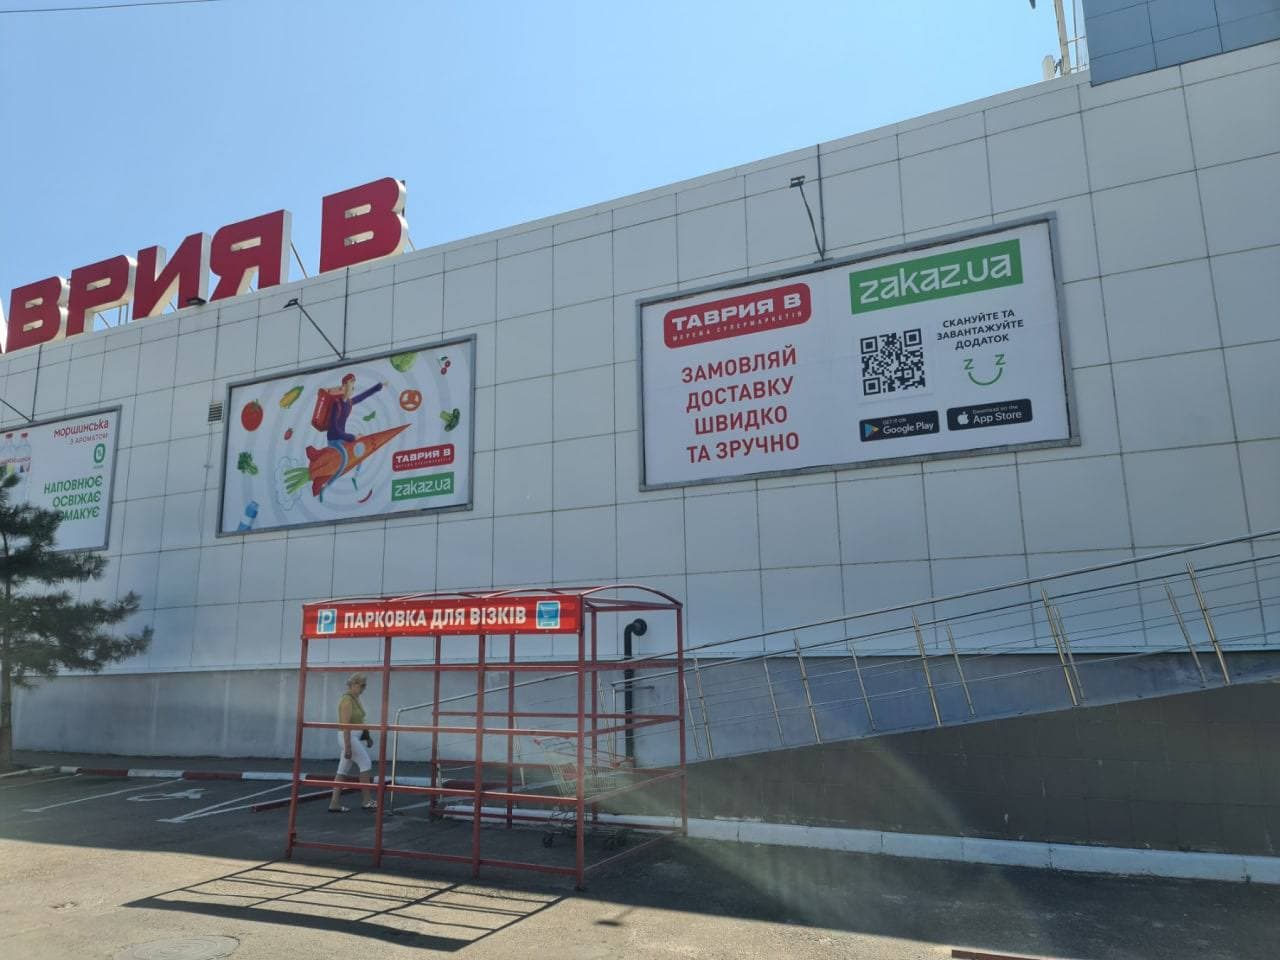 Zakaz.ua запустив доставку товарів з «Таврія В» у Миколаєві